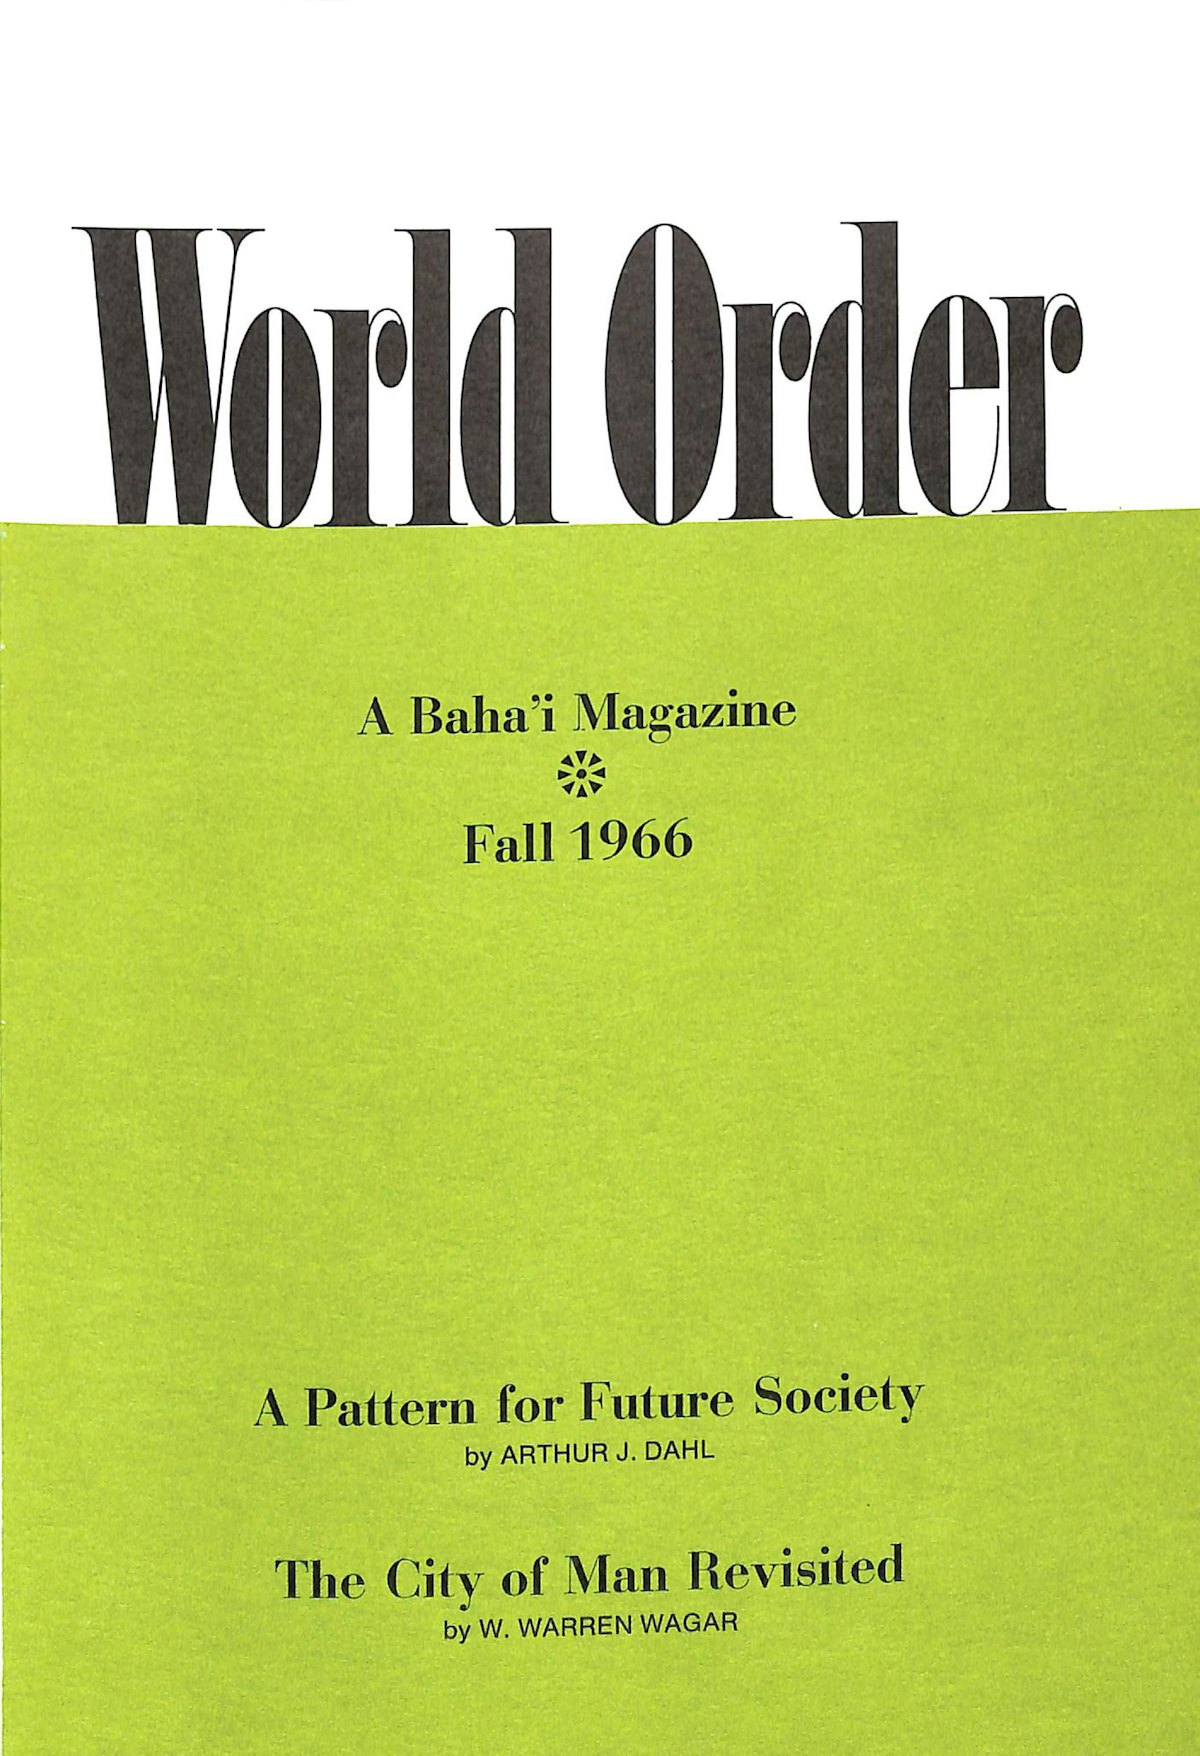 Le magazine « World Order » (L’Ordre mondial) a été publié pour la première fois en 1935. Il présentait des essais, des poèmes, des souvenirs personnels et des articles sur l’histoire. Le périodique rassemblait en un seul volume des œuvres d’érudits, de poètes, d’artistes et de spécialistes de diverses disciplines. Le premier volume contenait également des extraits d’une lettre de Shoghi Effendi intitulée « Le but d’un nouvel ordre mondial ».